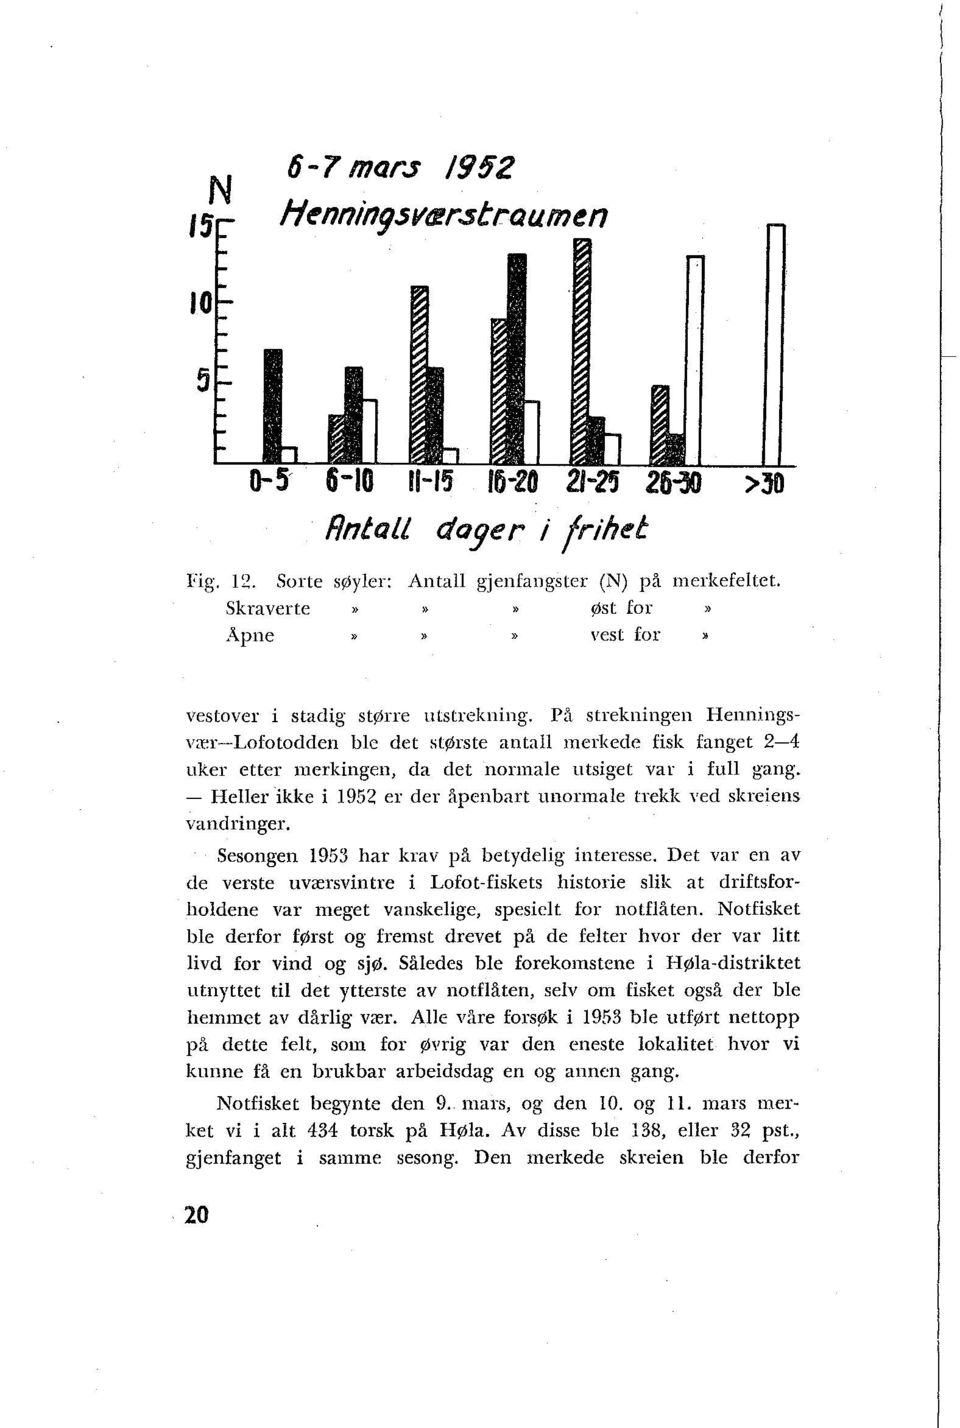 - Heller ikke i 1952 er der åpenbart unormale trekk red sltreieiis varidritiger. Sesongen 1953 har krav på betydelig interesse.